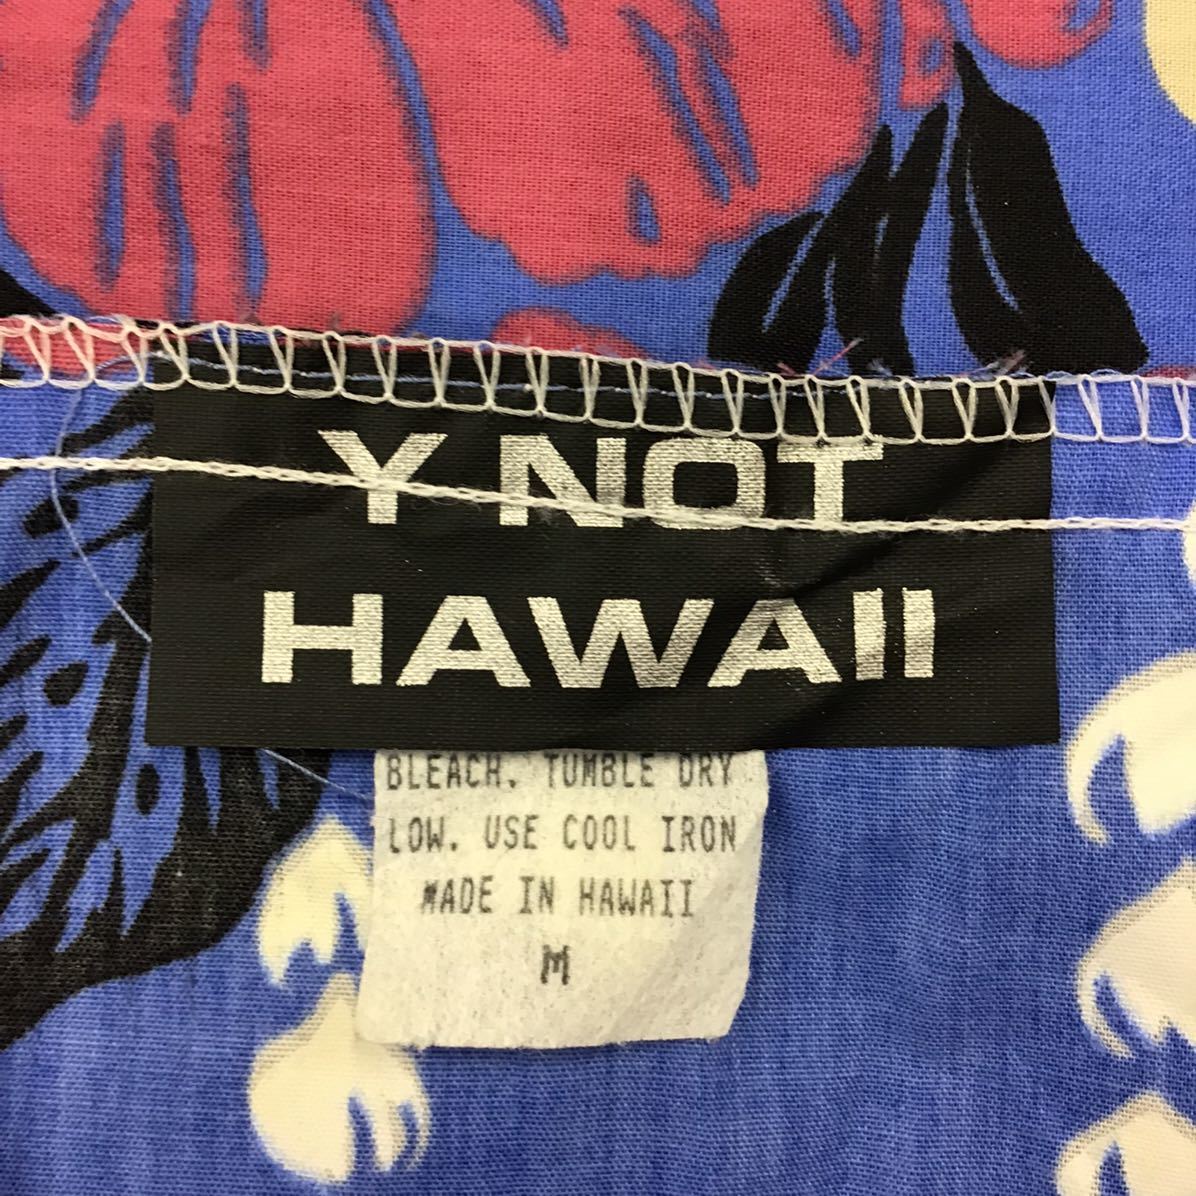 [ki016] Гаваи производства Y NOT HAWAII M размер MM цветочный принт One-piece хула голубой б/у одежда wai узел общий рисунок переделка для тоже * бесплатная доставка 